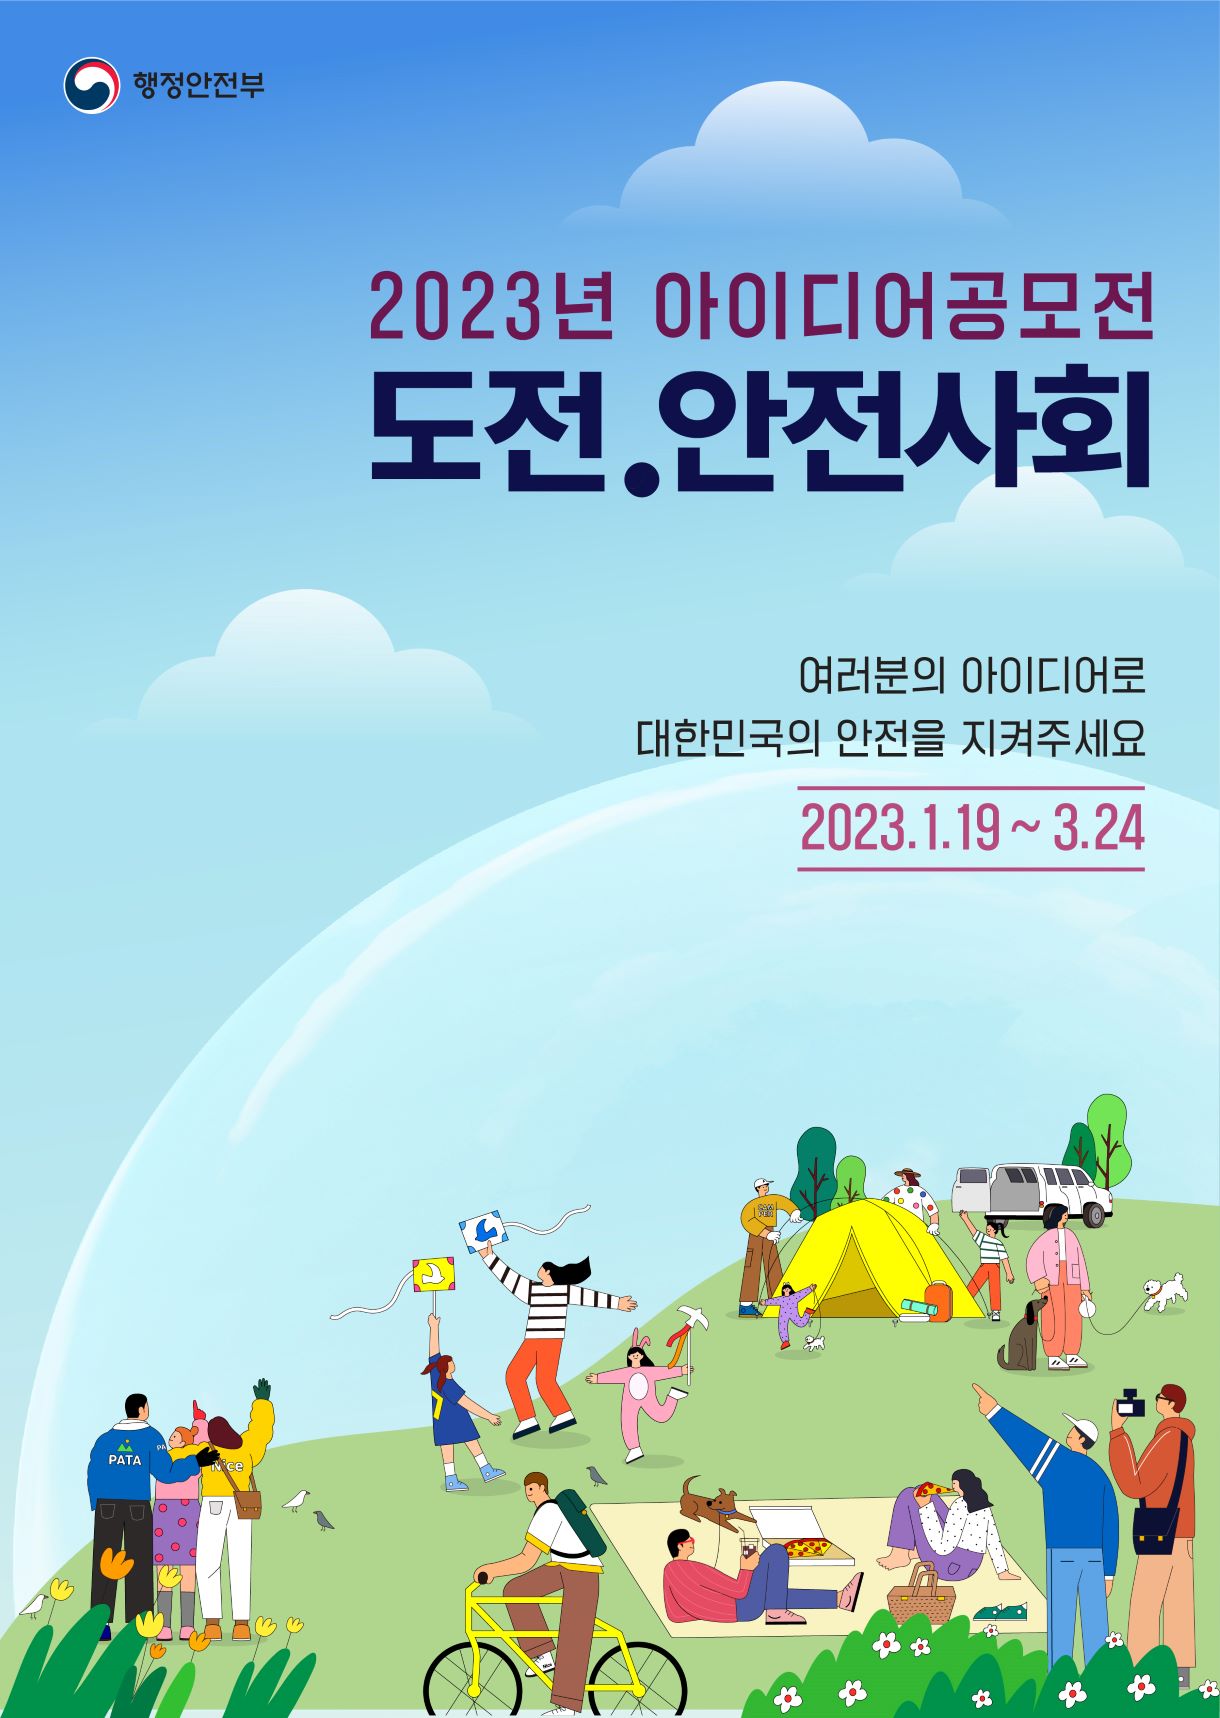 2023년 '도전.안전사회' 공모전 개최 안내 2